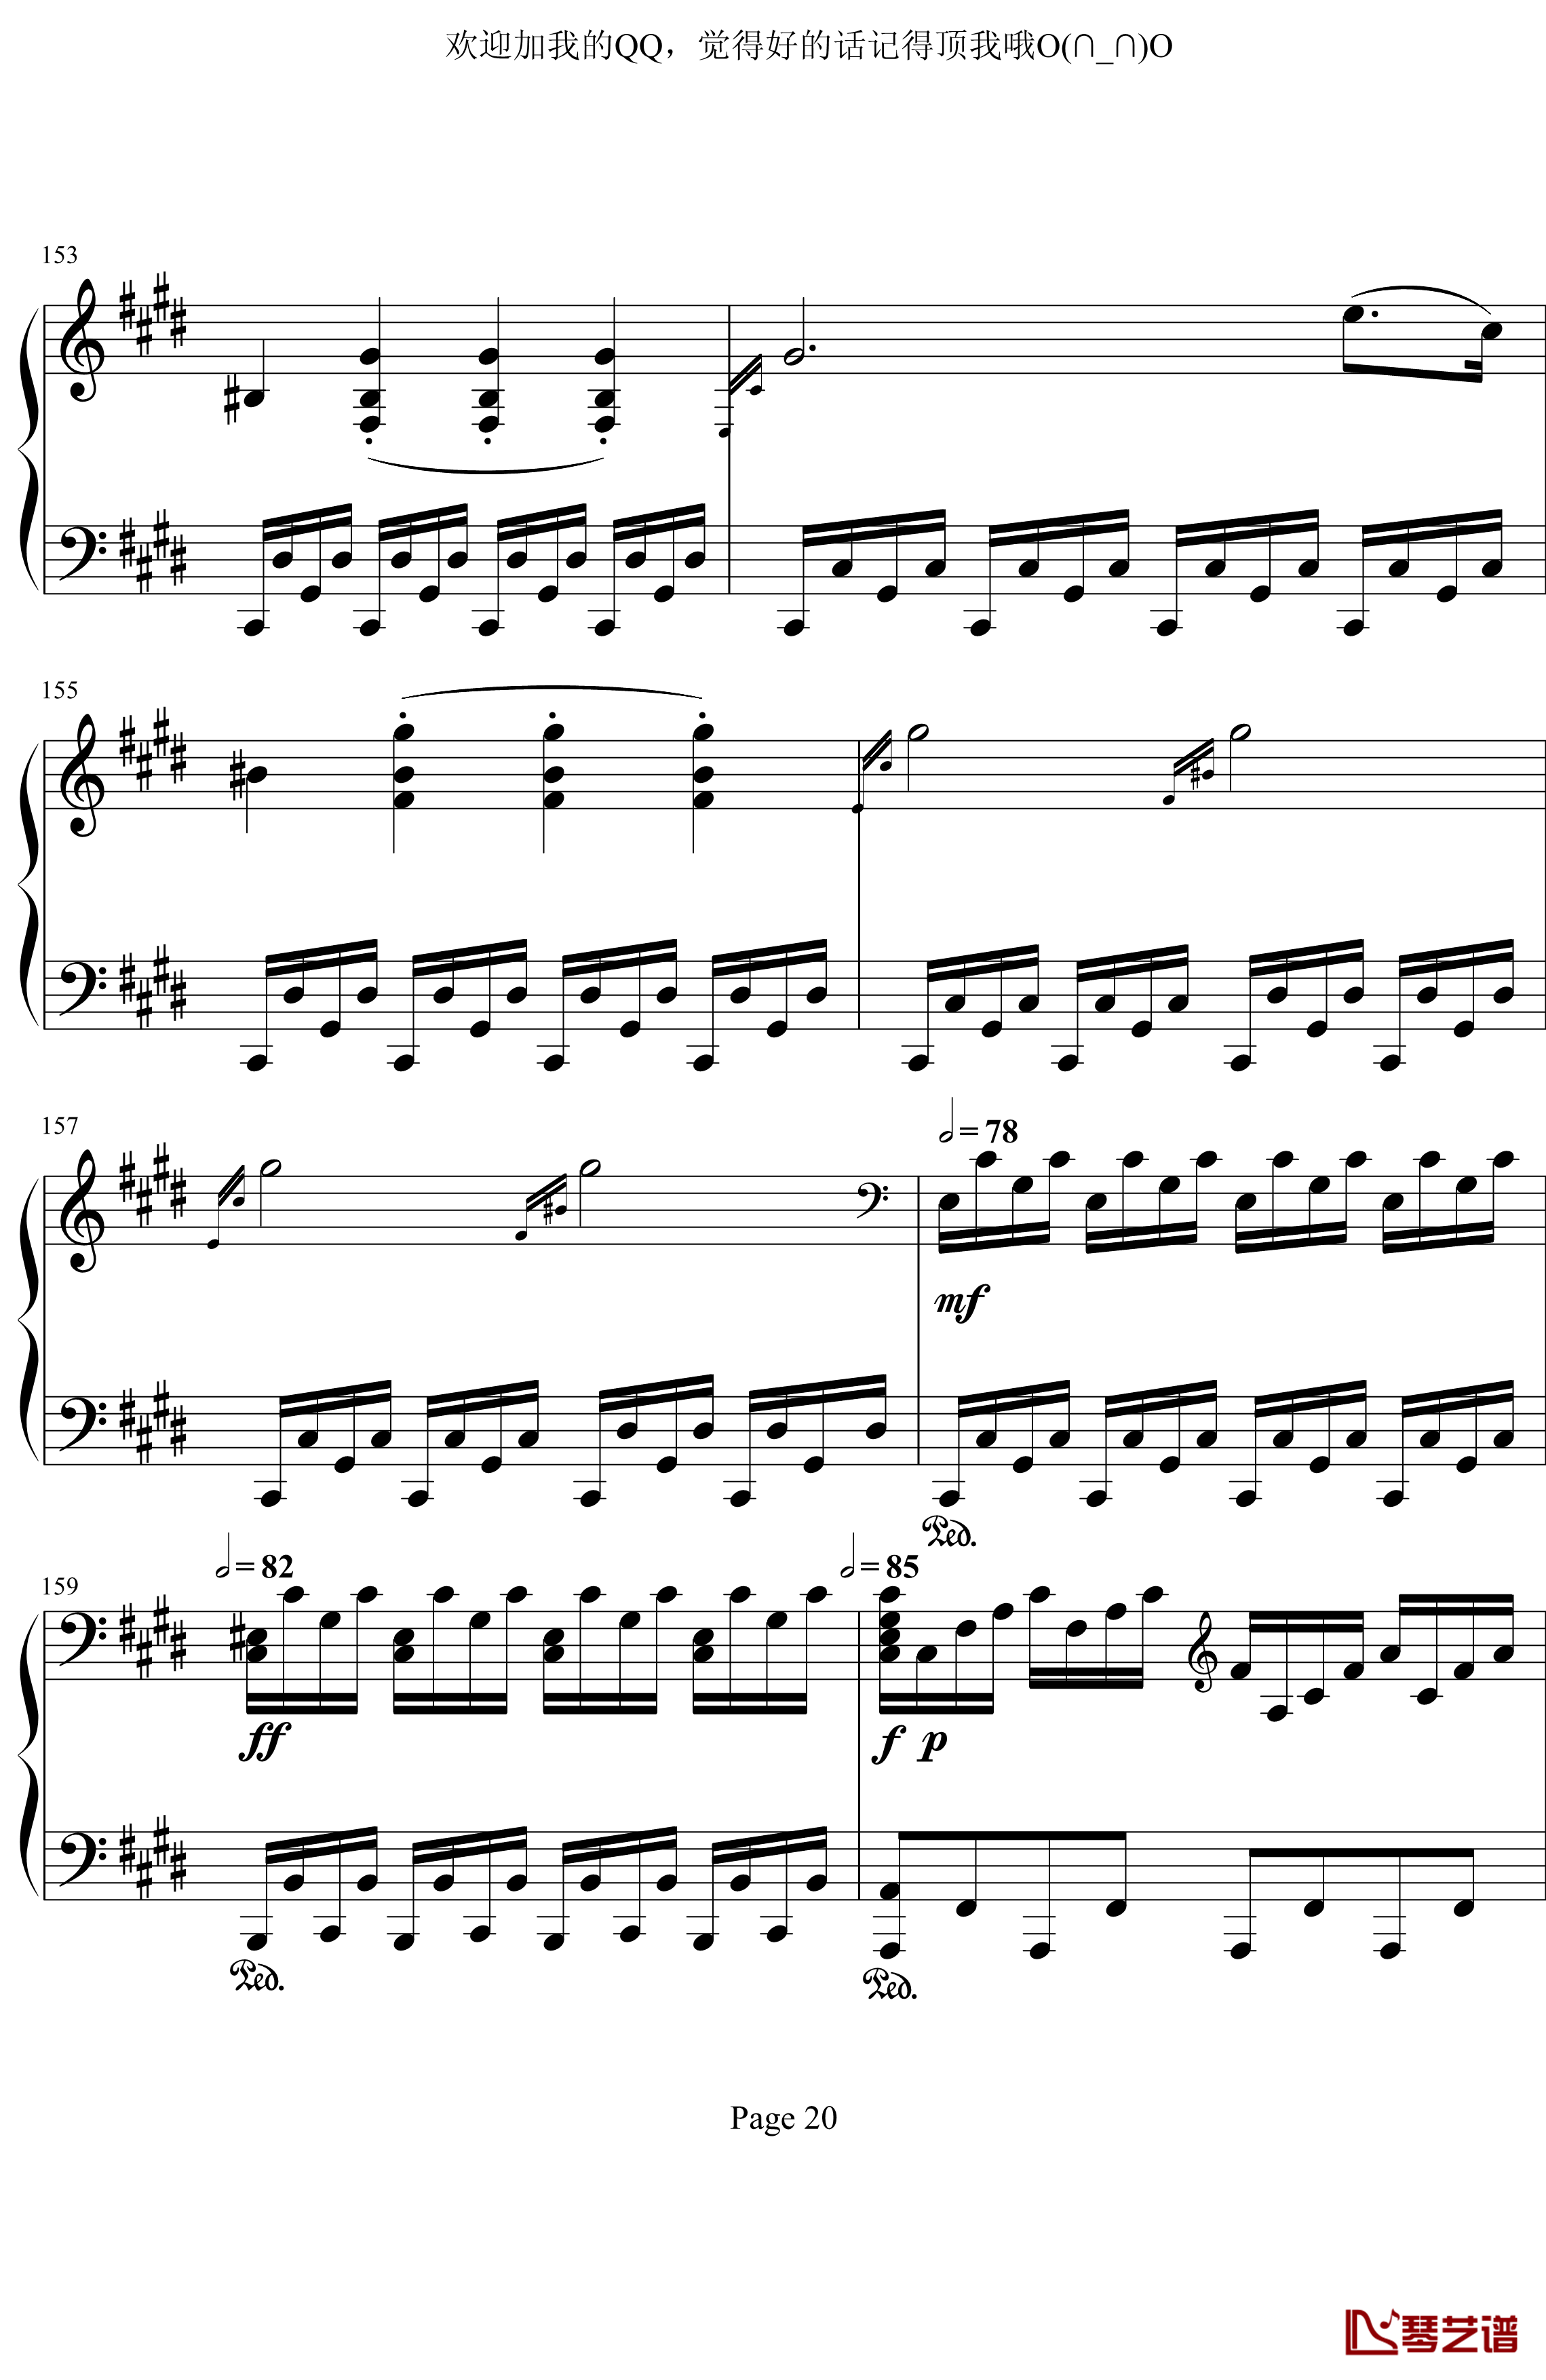 月光奏鸣曲第三乐章钢琴谱-贝多芬-beethoven20